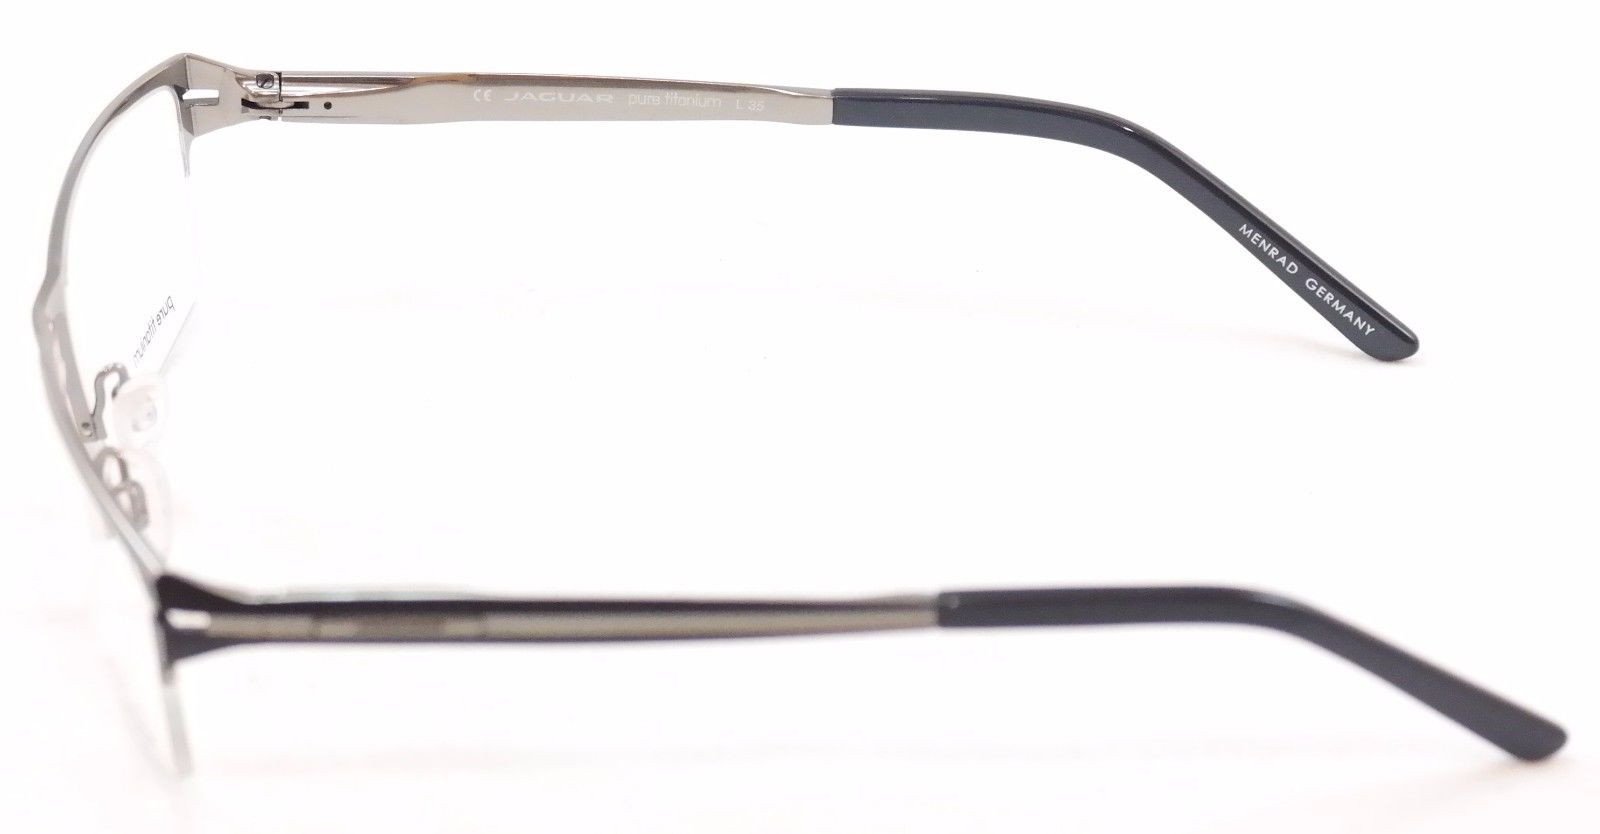 Jaguar Eyeglasses Frame 39504-647 Black Silver Metal Germany Made 54-18-140